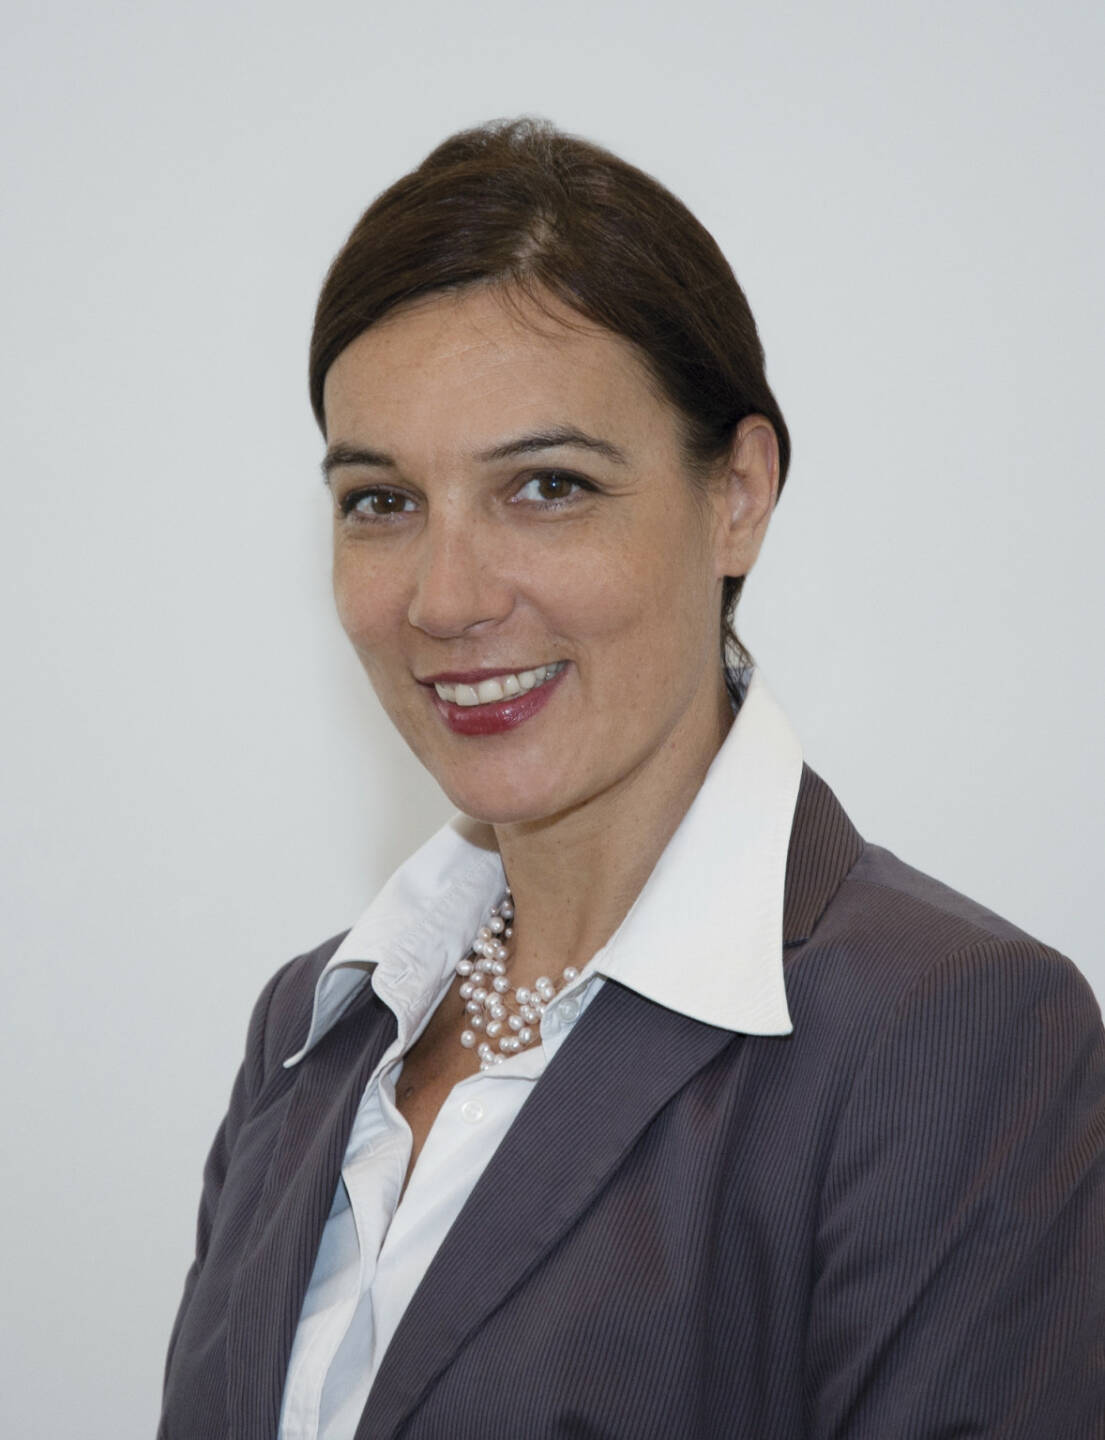 Christine Theodorovics ist ab 01. Juli 2013 in den Vorstand der Zürich Versicherungs-Aktiengesellschaft bestellt worden (c) Zurich